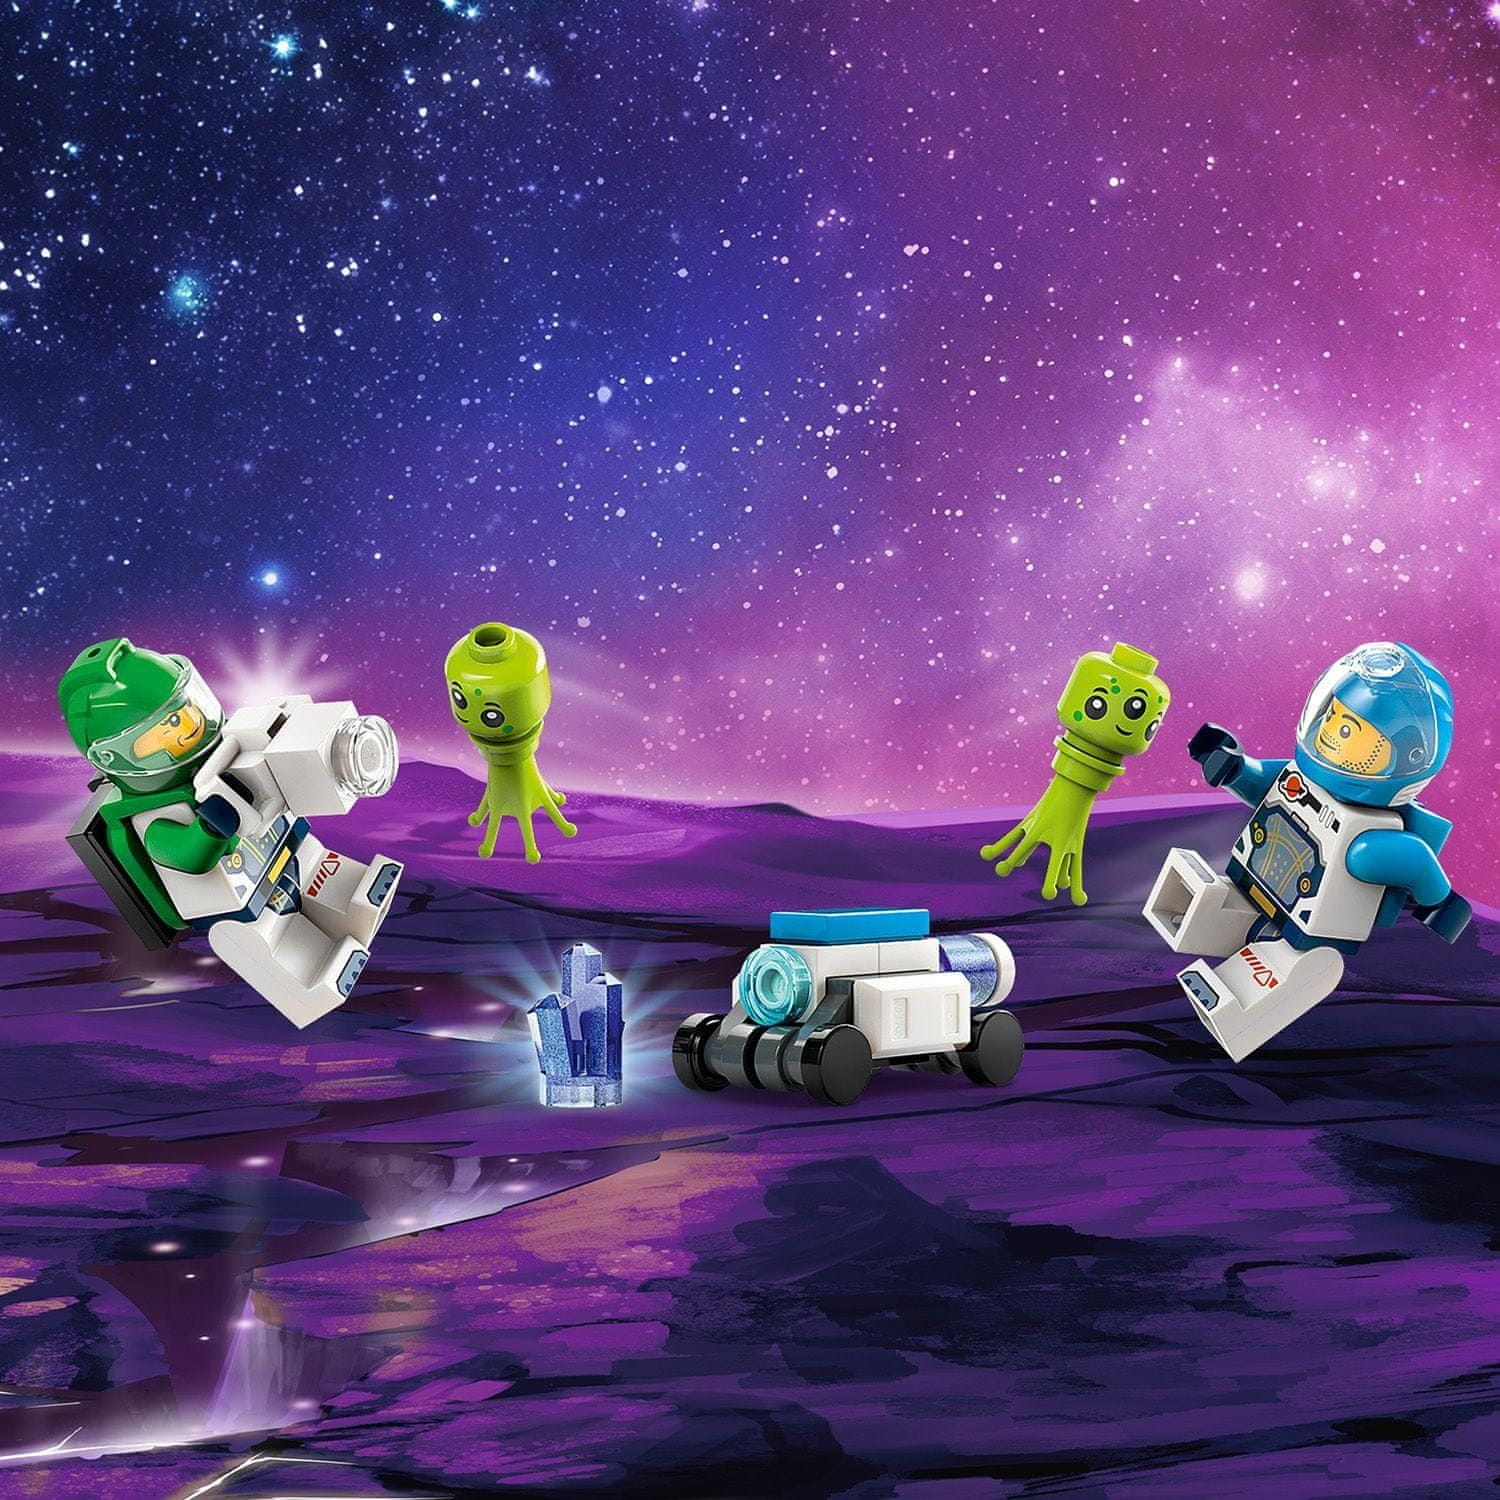 LEGO City 60431 Prieskumné vesmírne vozidlo a mimozemský život